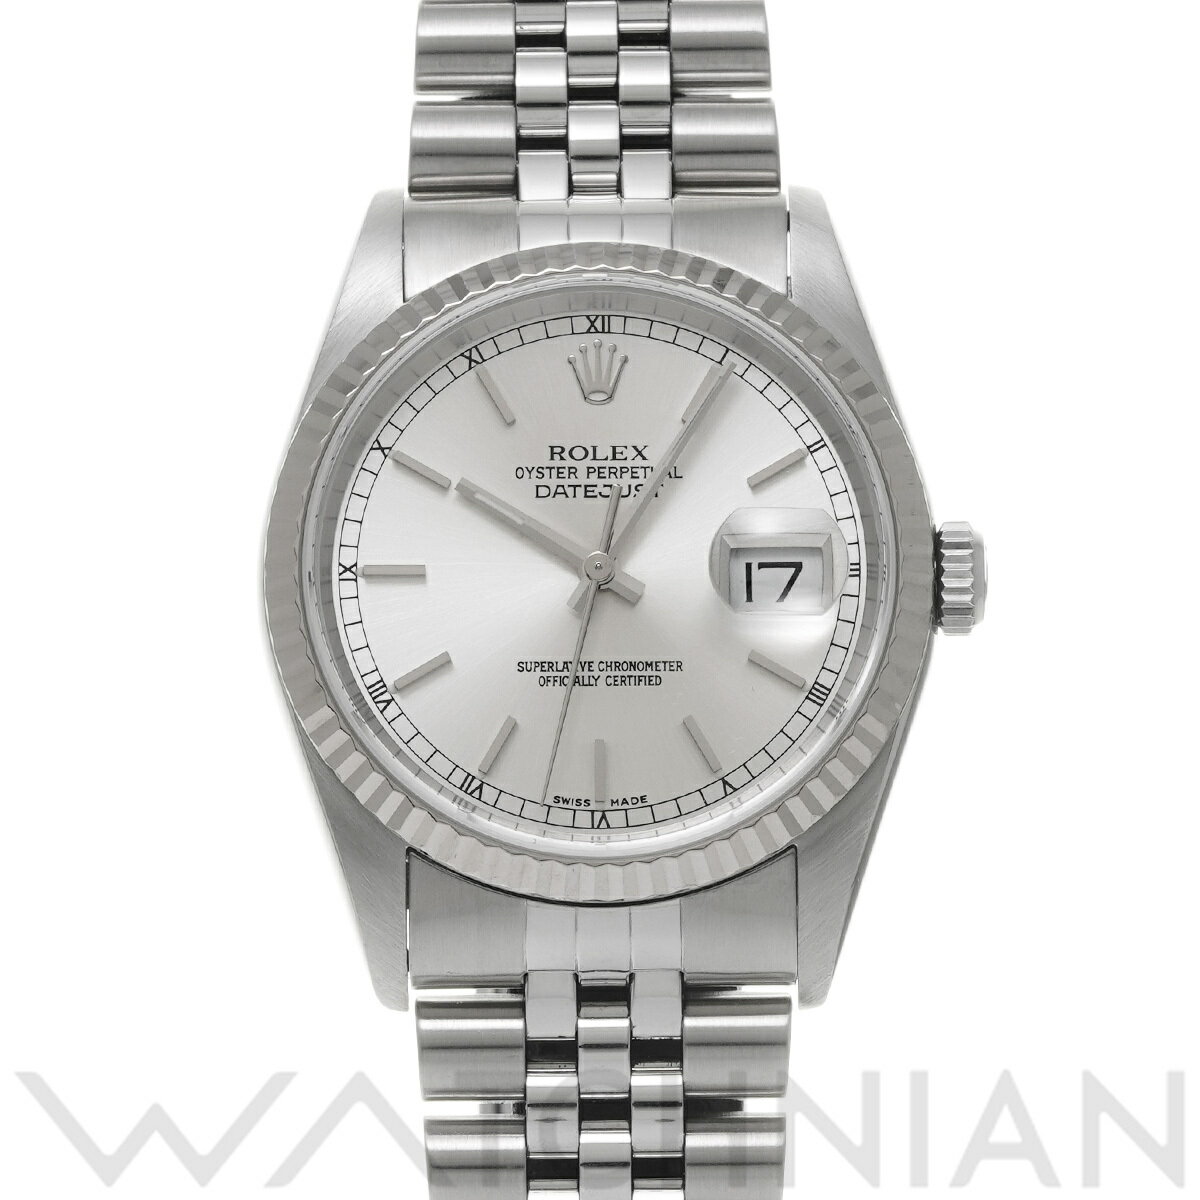 【ローン60回払い無金利】【中古】 ロレックス ROLEX デイトジャスト 16234 K番(2001年頃製造) シルバー メンズ 腕時計 ロレックス 時計 高級腕時計 ブランド